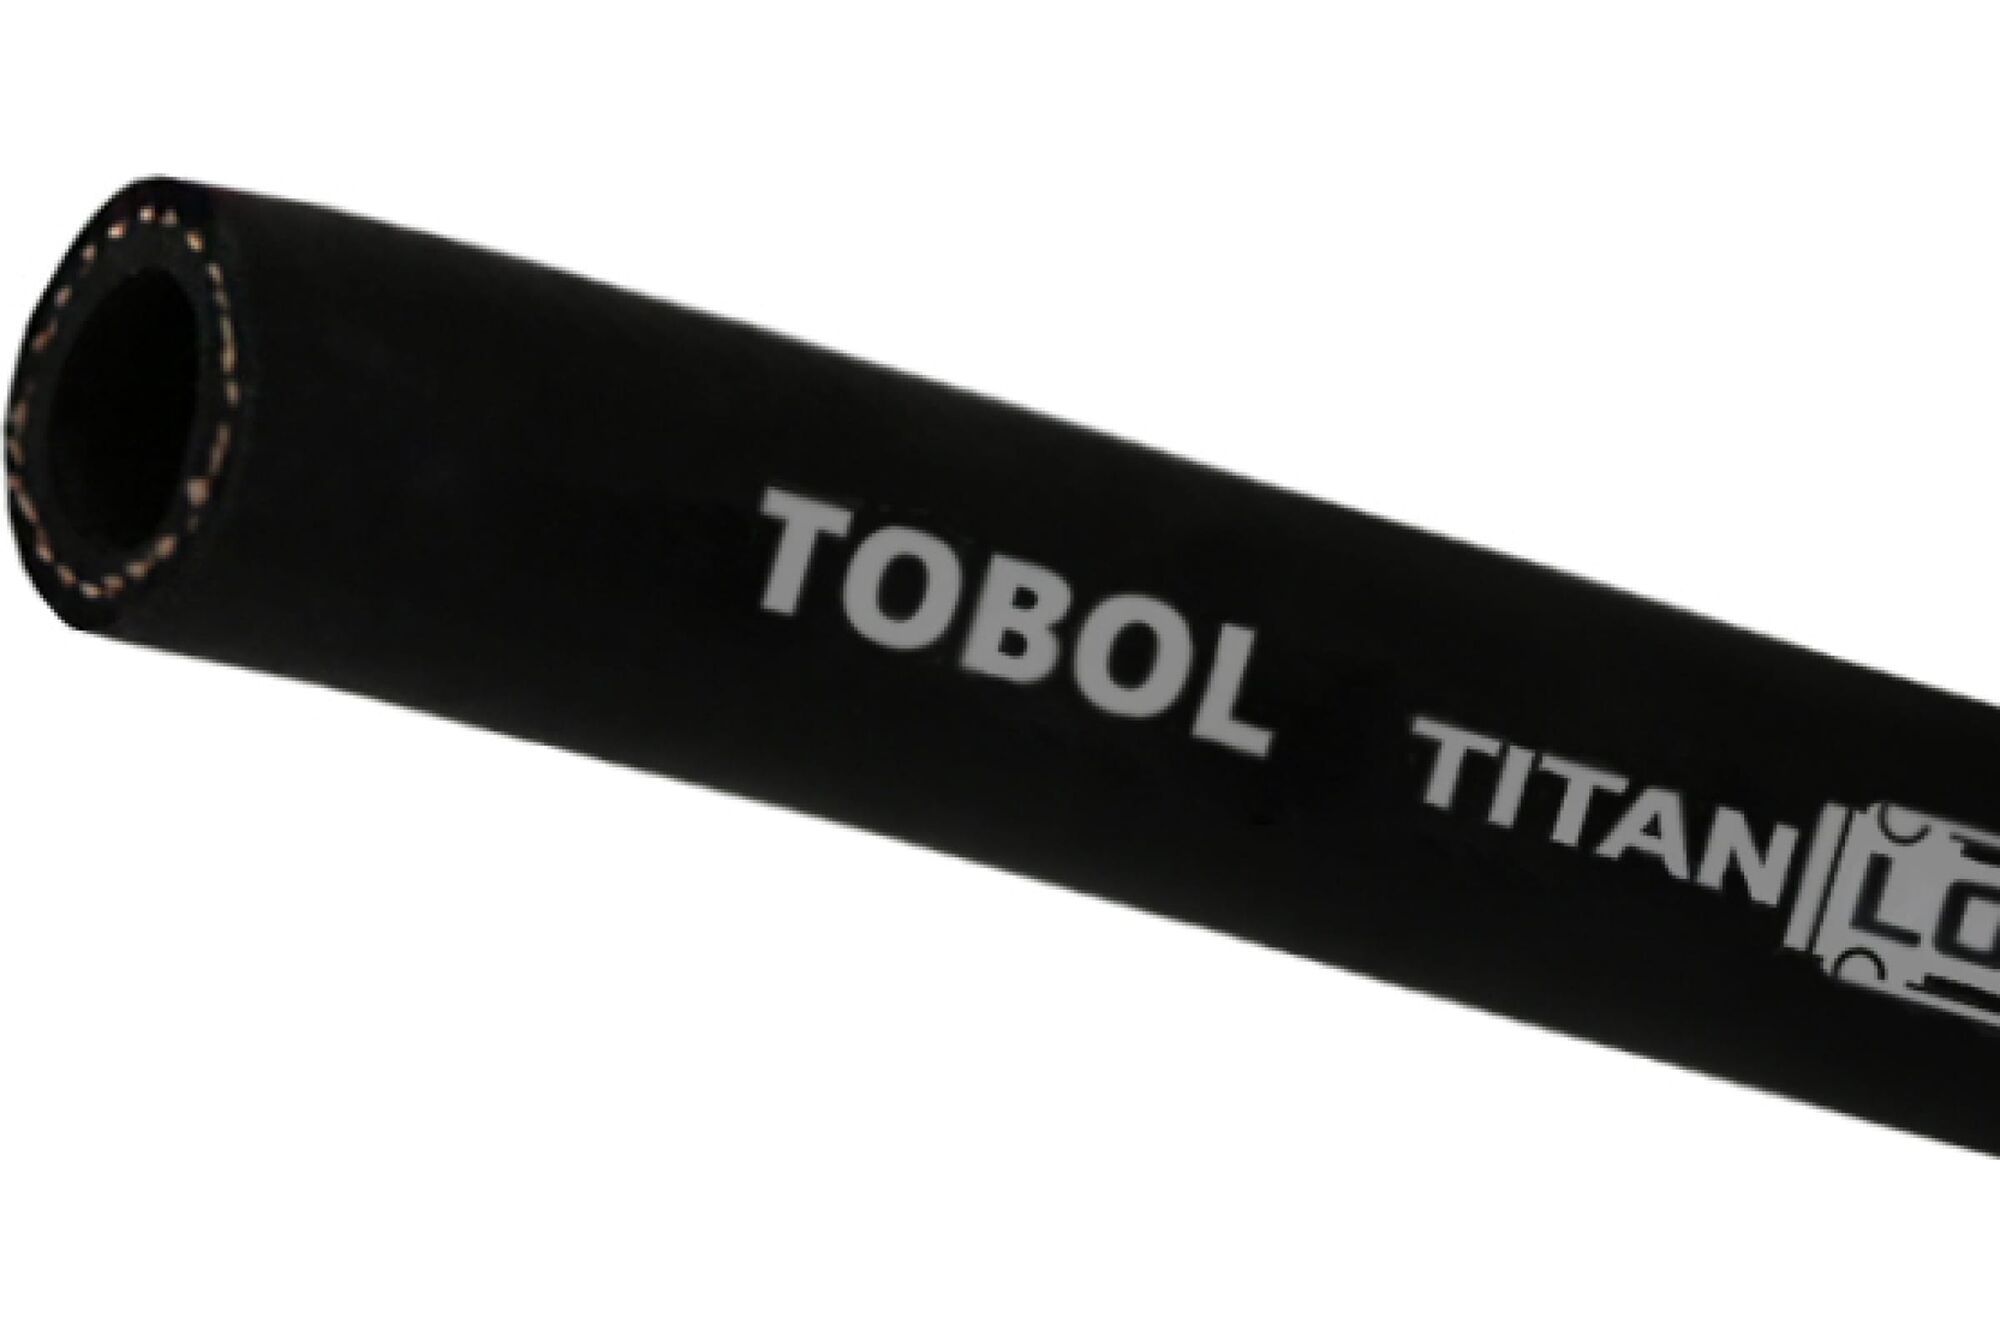 Маслобензостойкий напорный рукав TITAN LOCK TOBOL, 20 Бар, внутренний диаметр 22 мм., TL022TB 10 м.